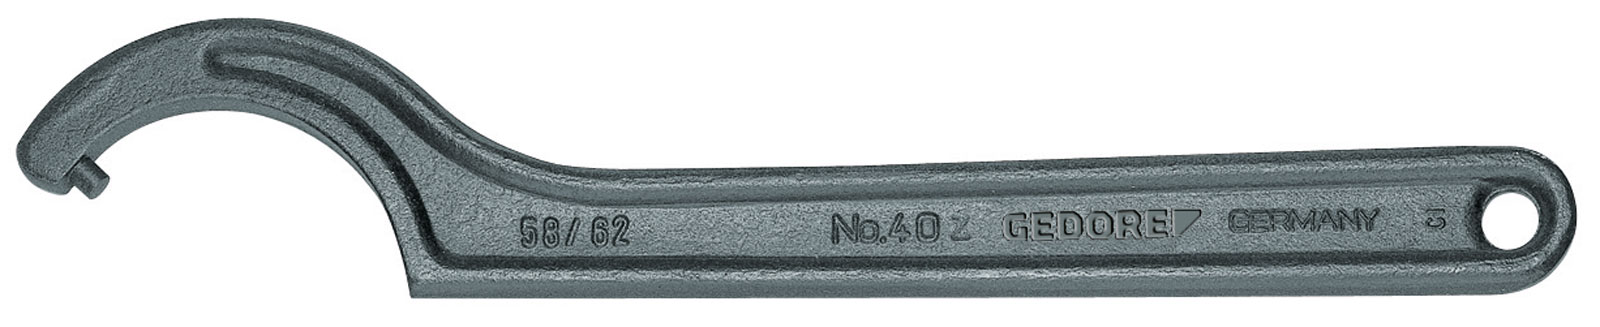 Bild von 40 Z 30-32 Hakenschlüssel, DIN 1810 Form B, 30-32 mm